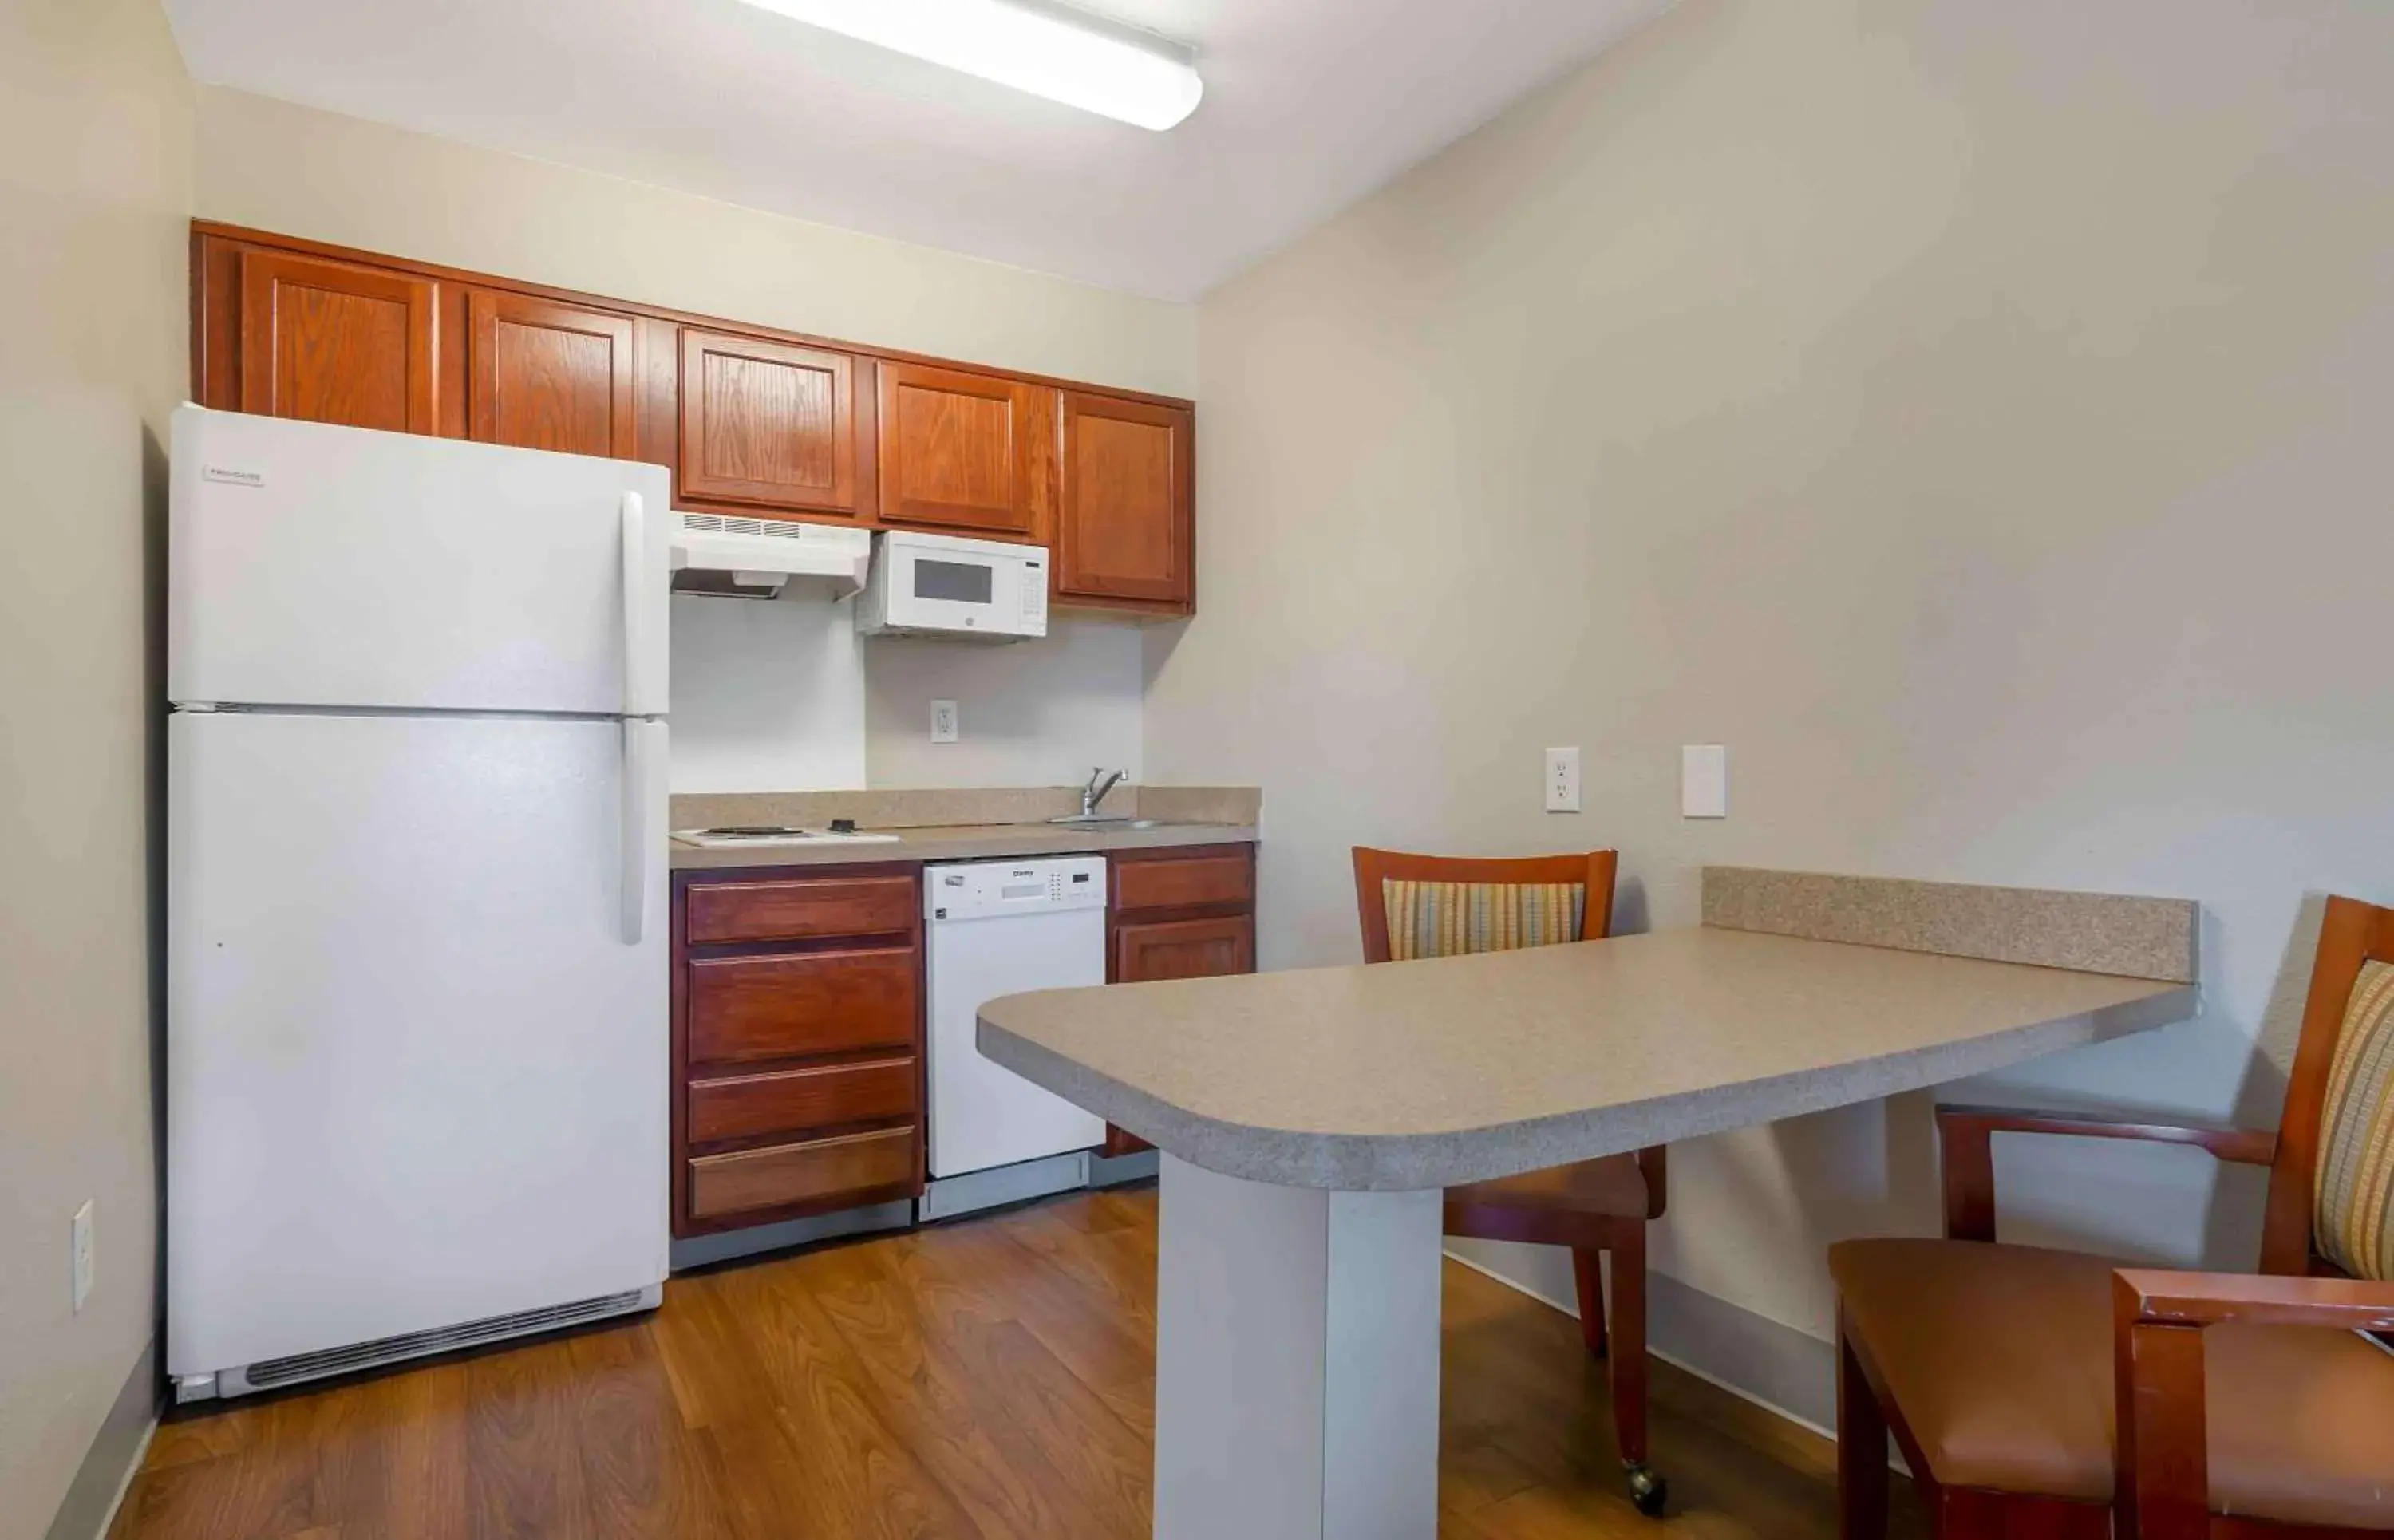 Bedroom, Kitchen/Kitchenette in Extended Stay America Suites - Kansas City - Lenexa - 87th St